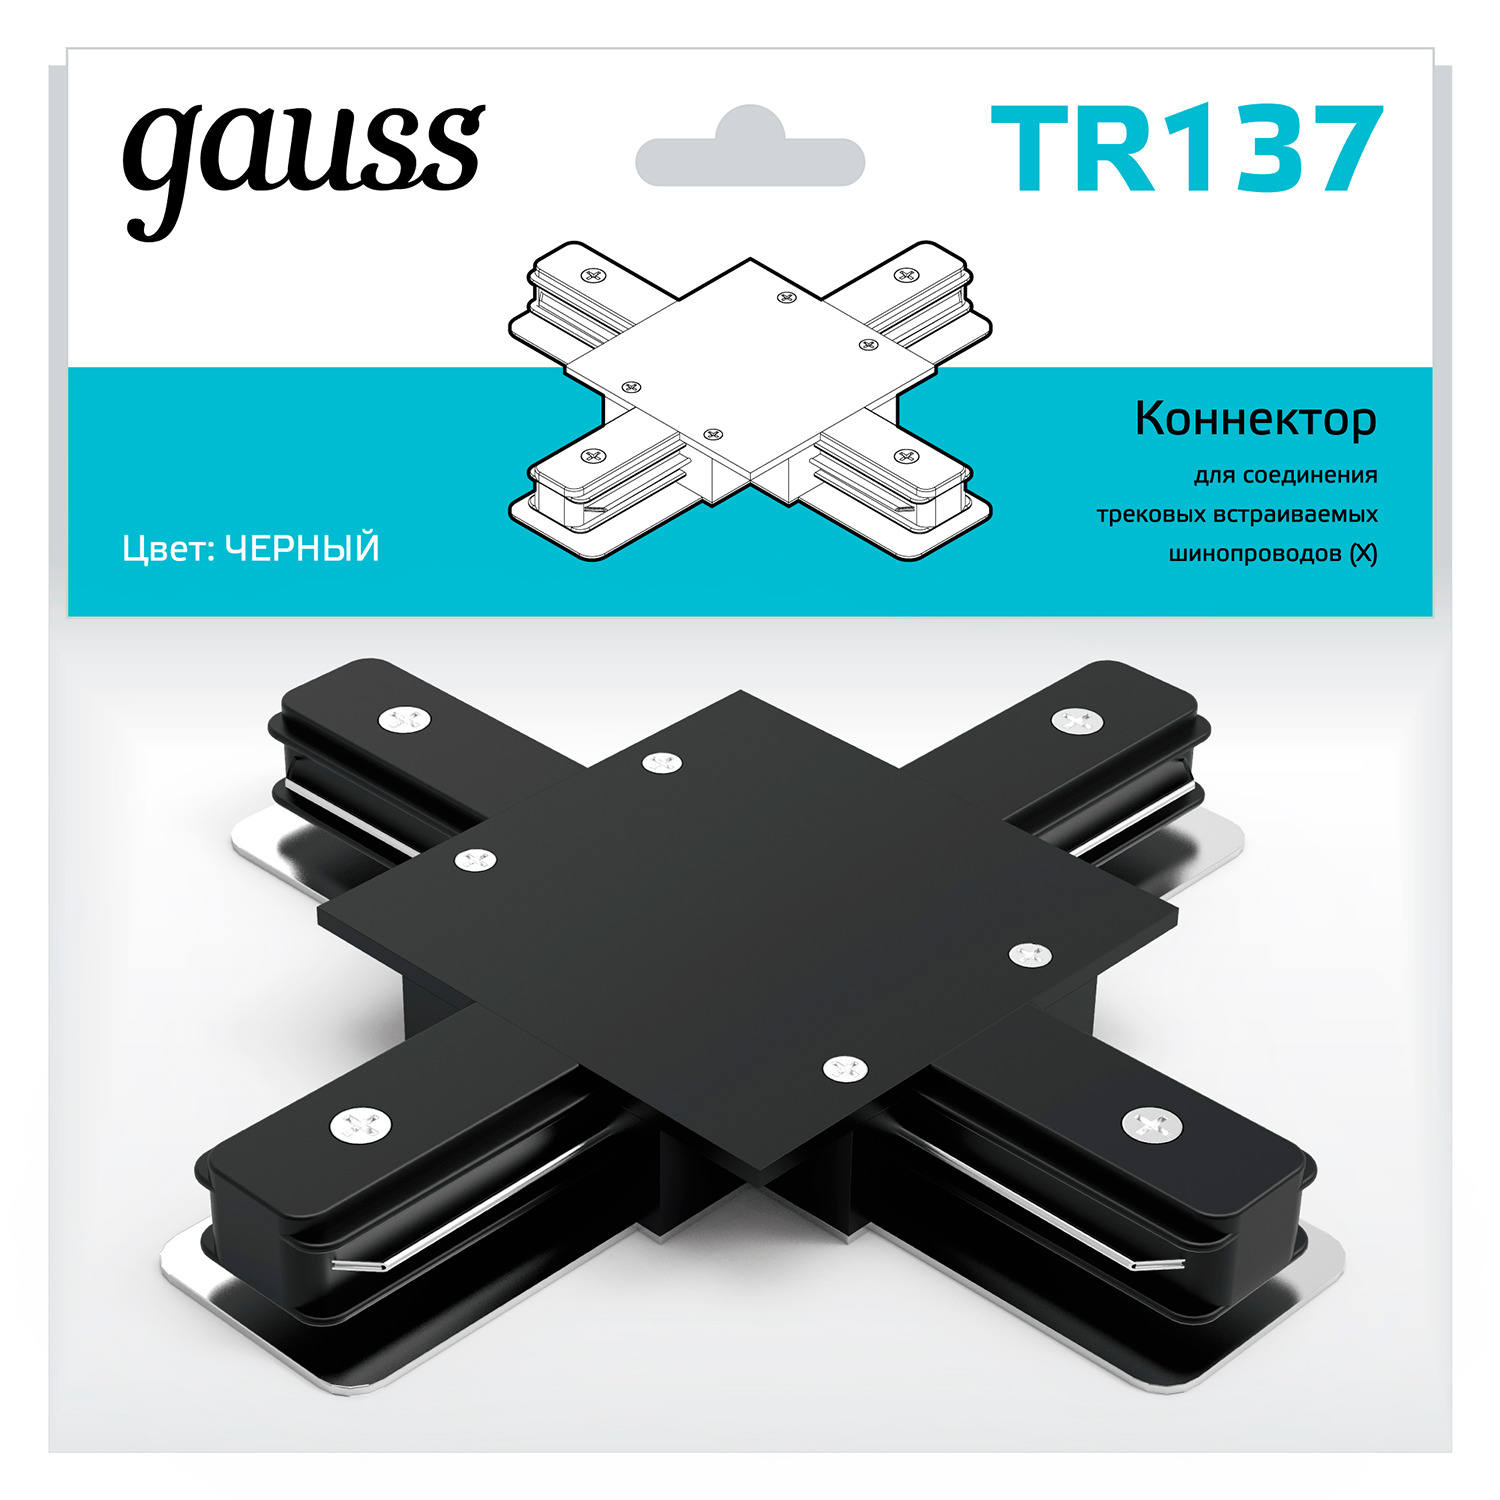 gauss коннектор для встраиваемых трековых шинопроводов угловой l белый tr134 50 шт Коннектор Gauss для встраиваемых трековых шинопроводов (+) черный